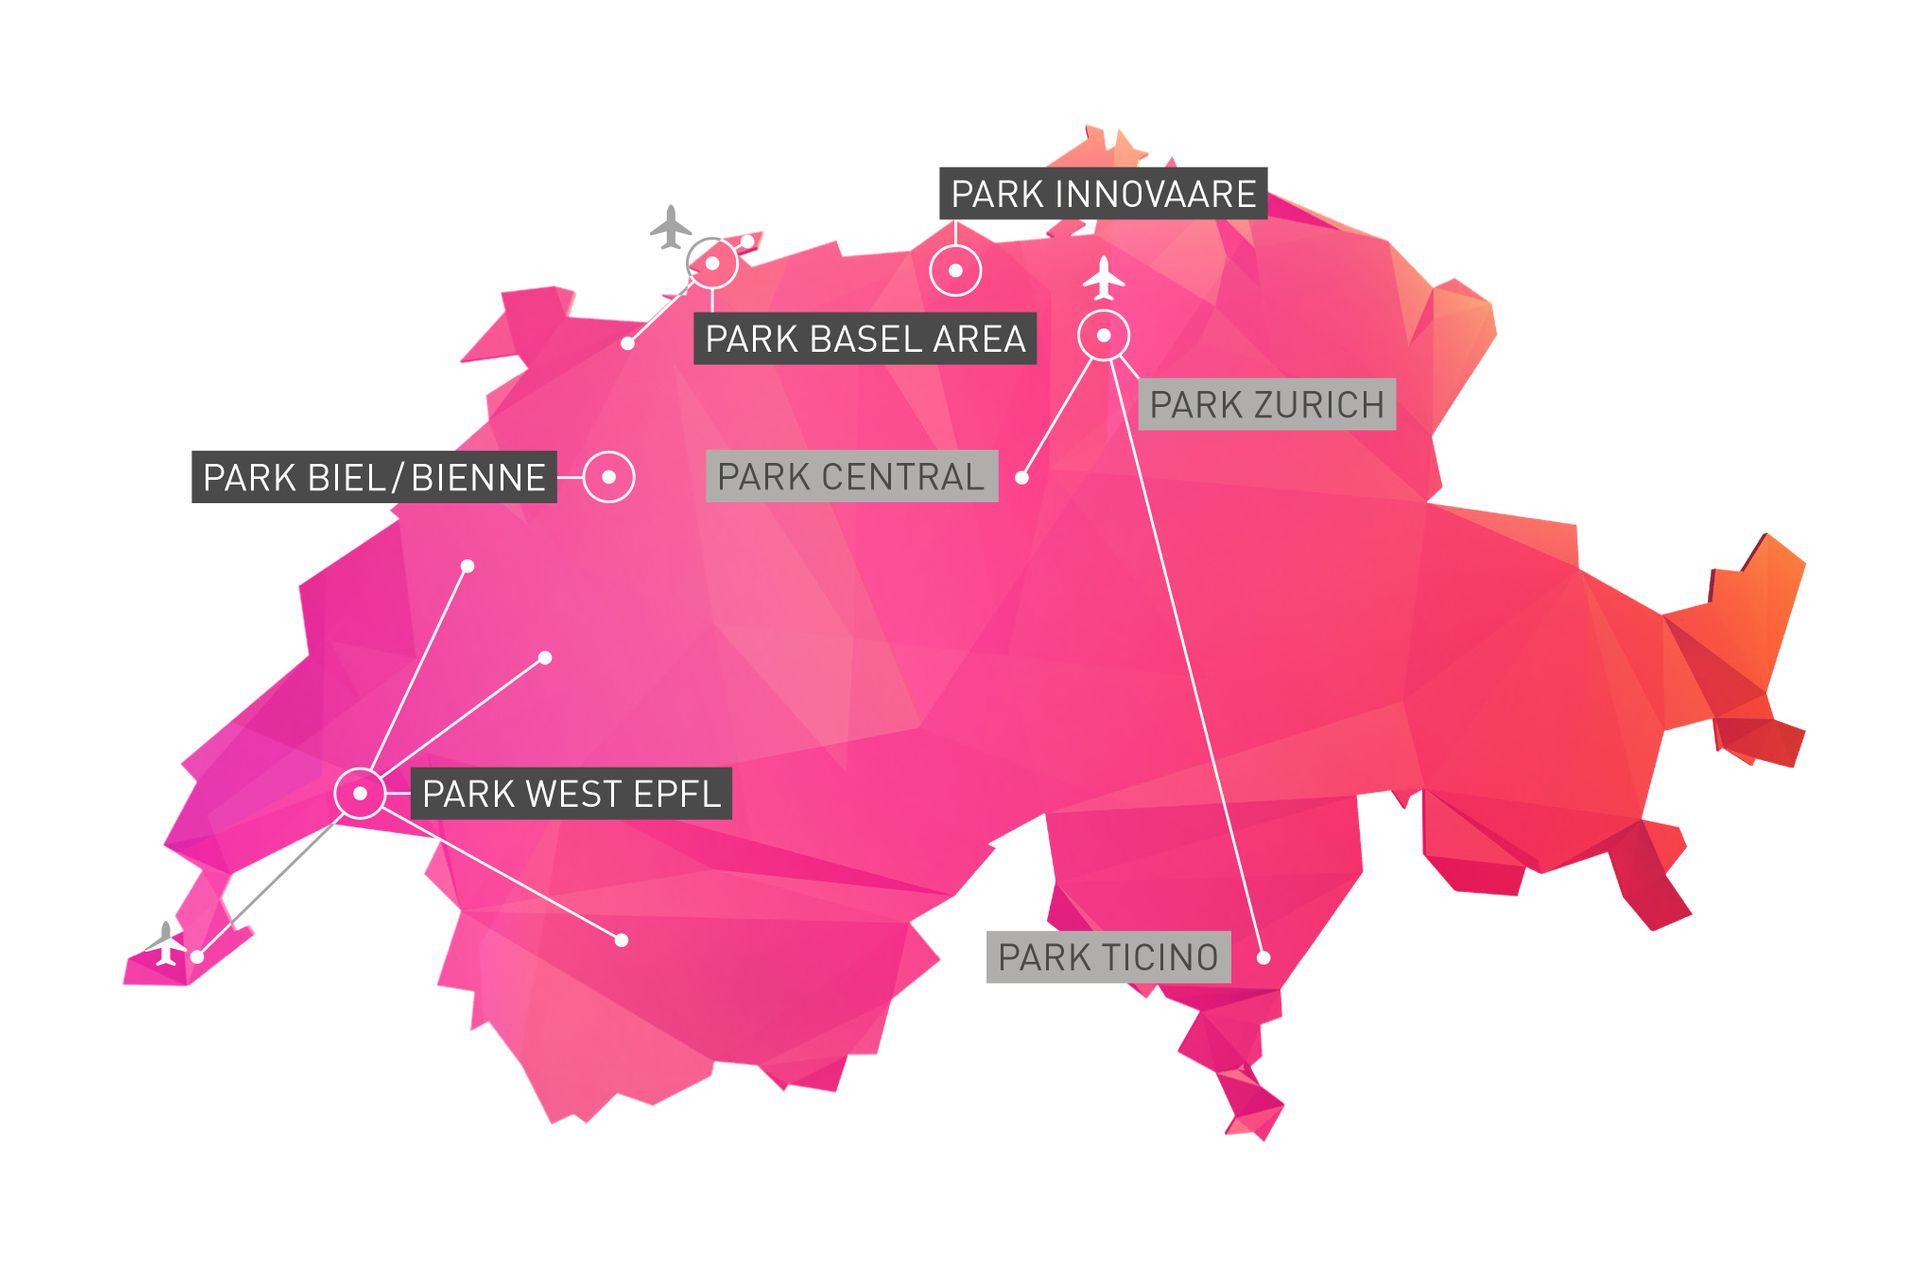 La rete dei Parchi dell'Innovazione della Svizzera vedrà Zurigo, Rotkreuz e Ticino in simbiosi